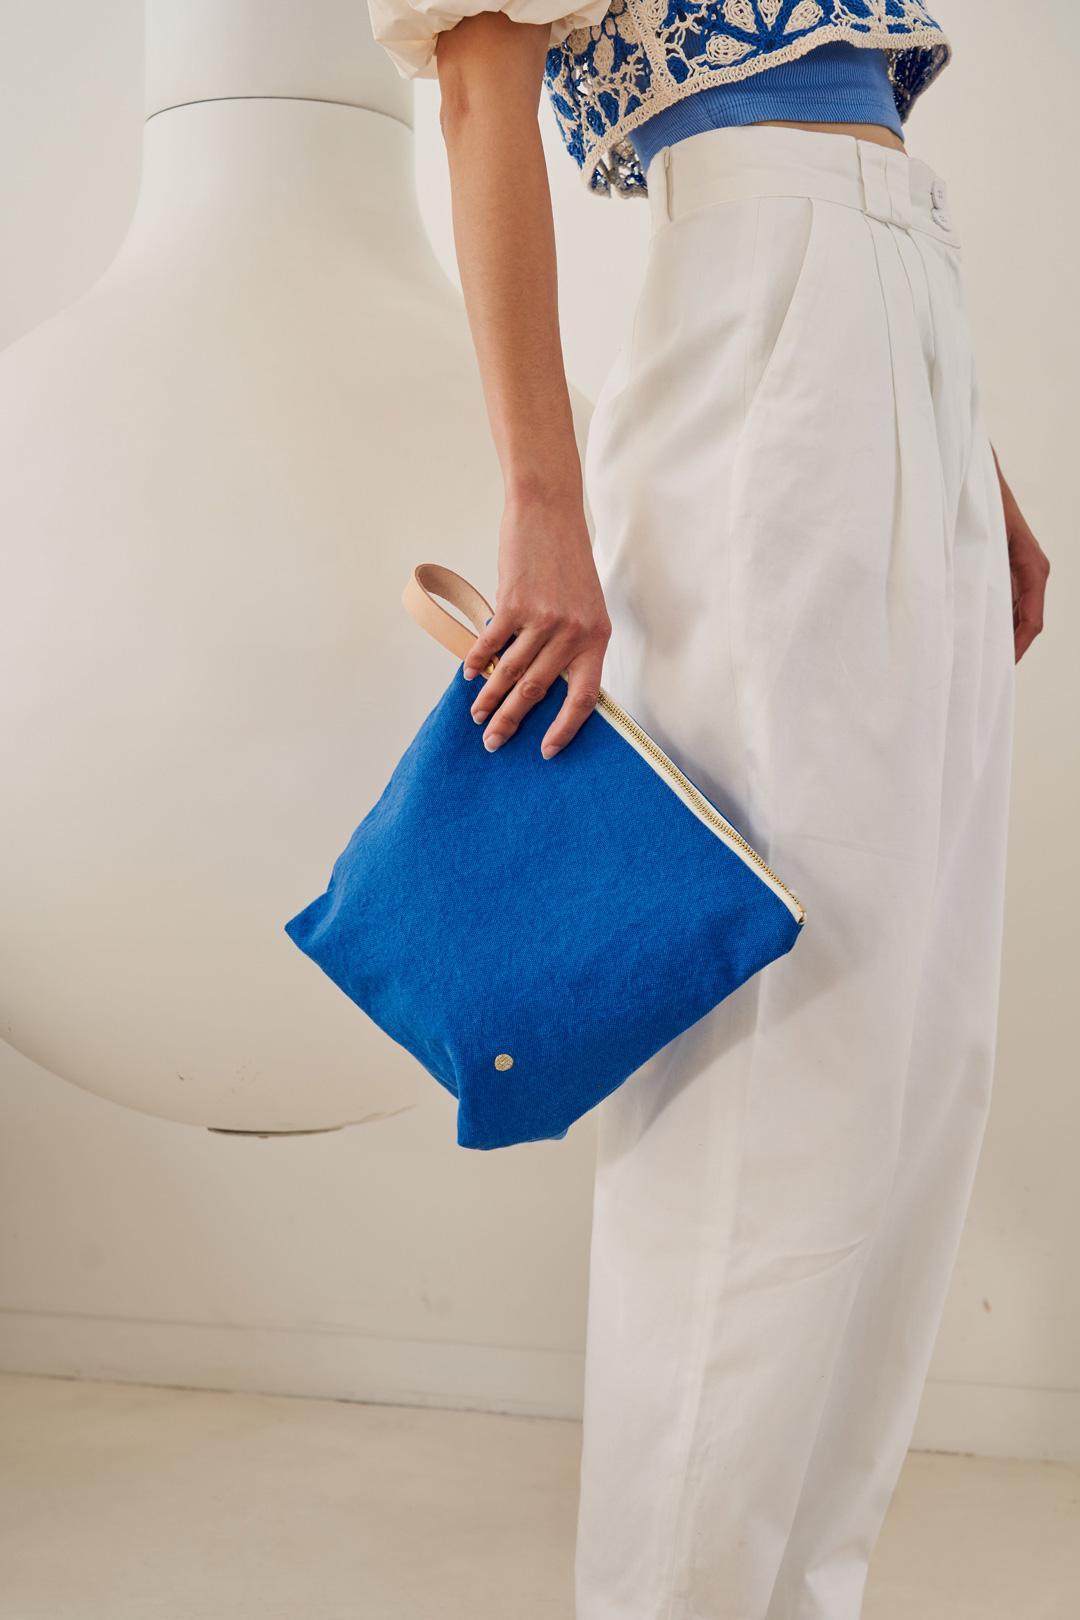 troiletry bag cotton blue